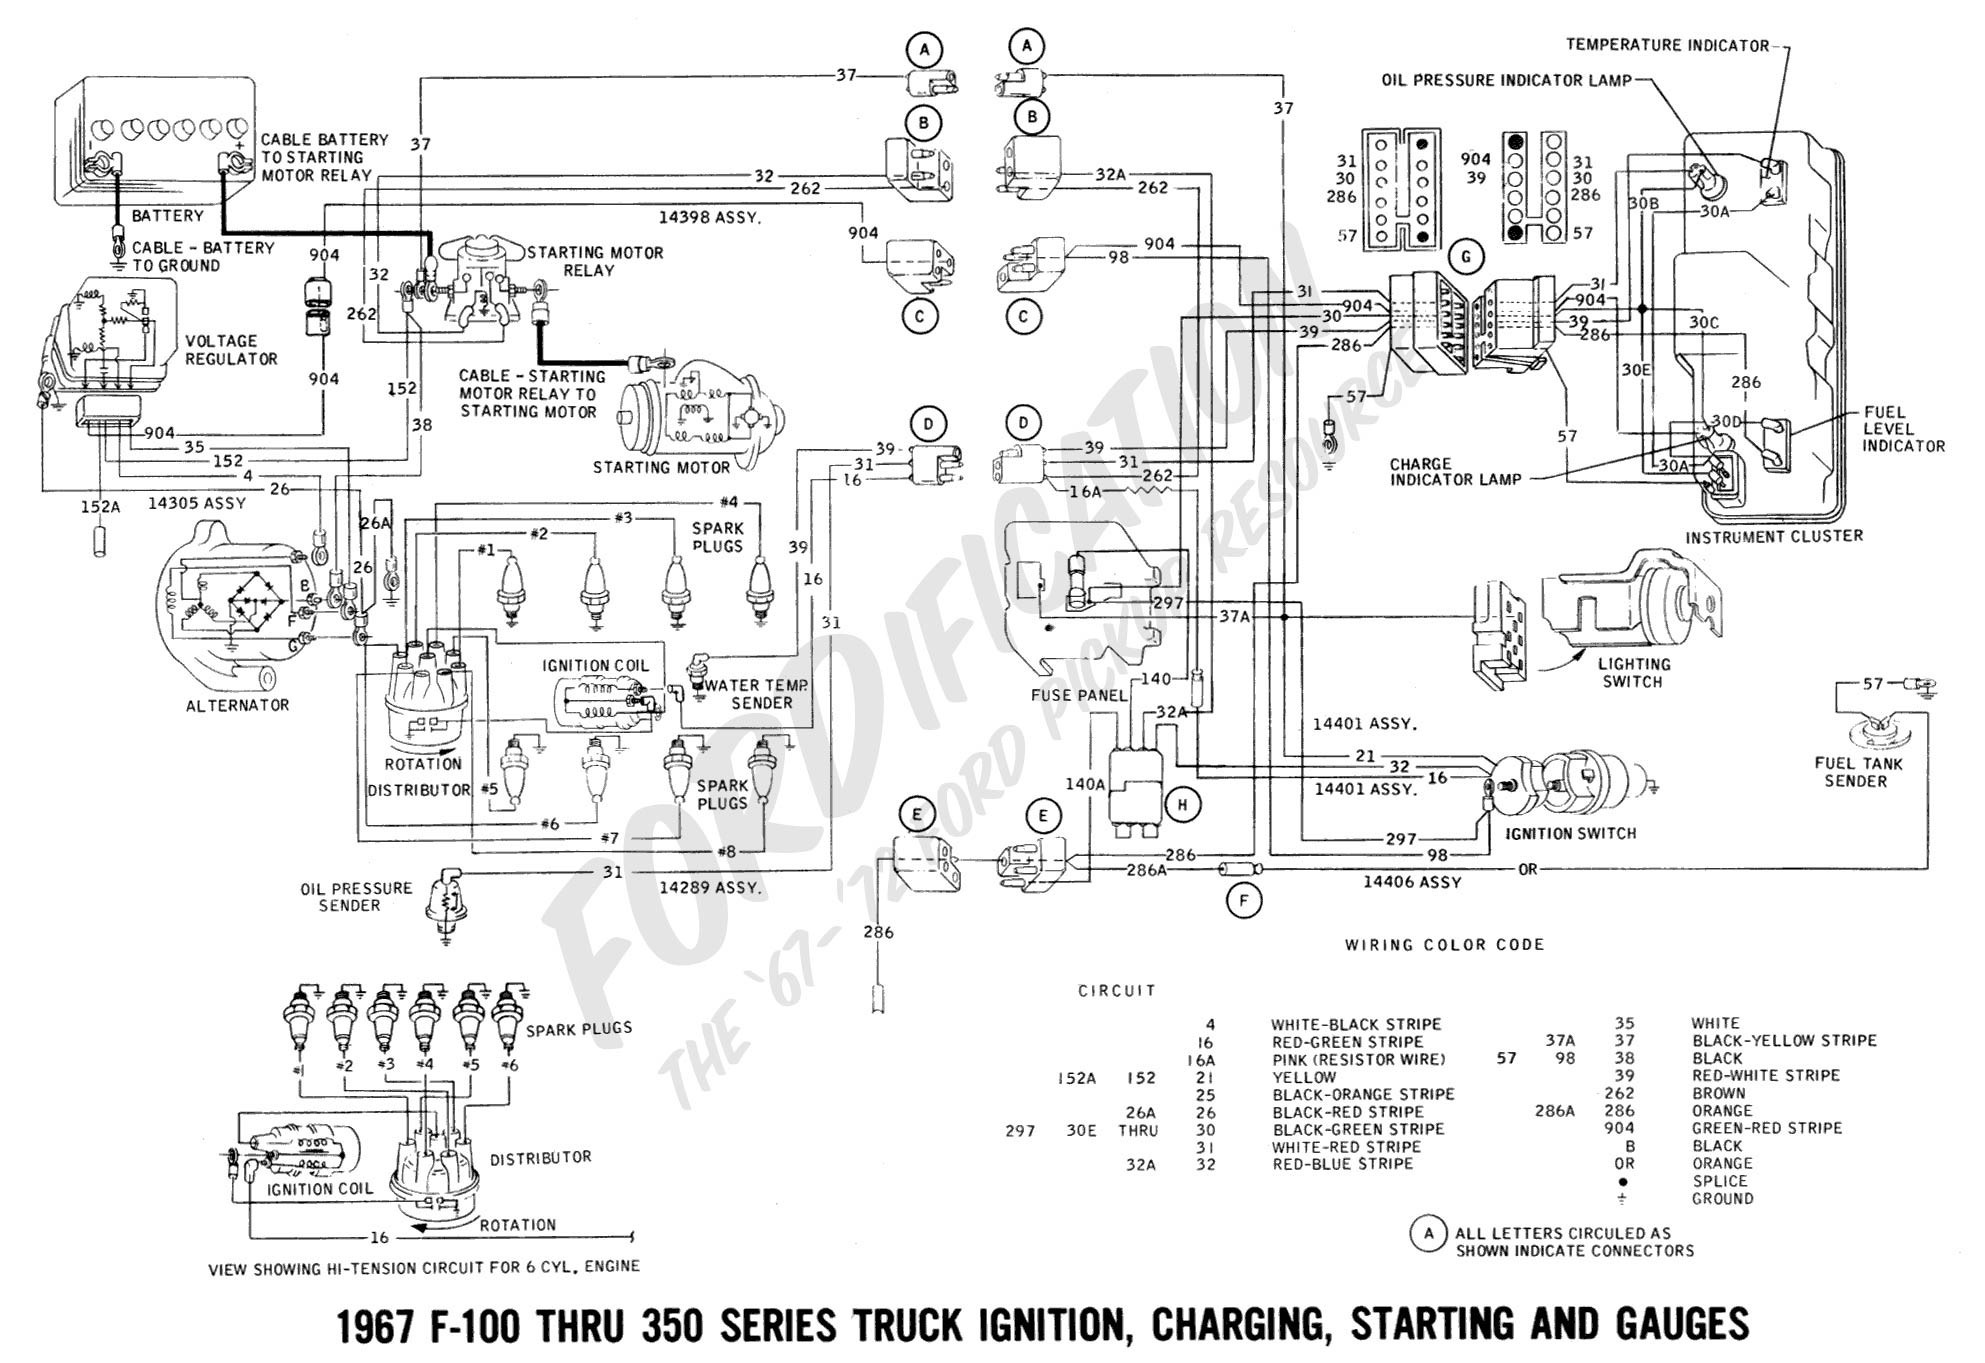 97 Ford Explorer Wiring Diagram from detoxicrecenze.com